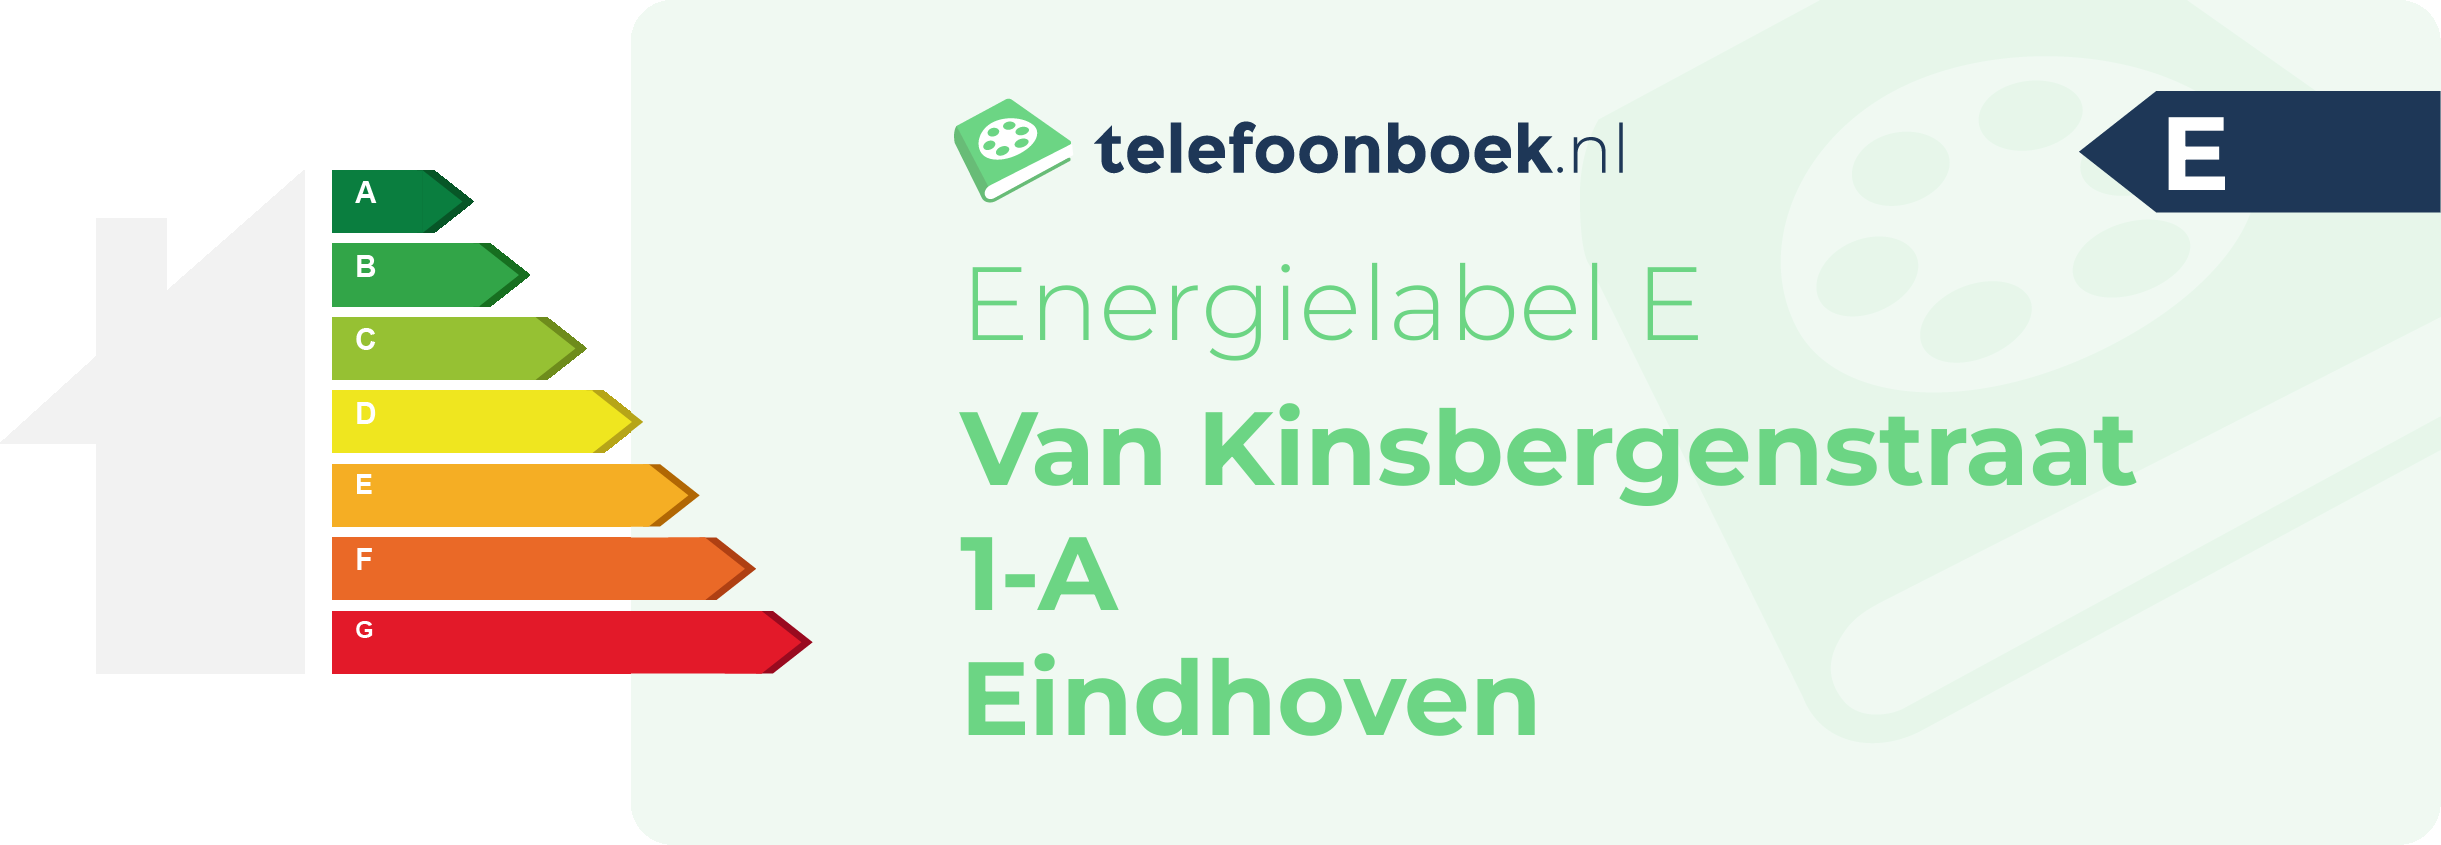 Energielabel Van Kinsbergenstraat 1-A Eindhoven